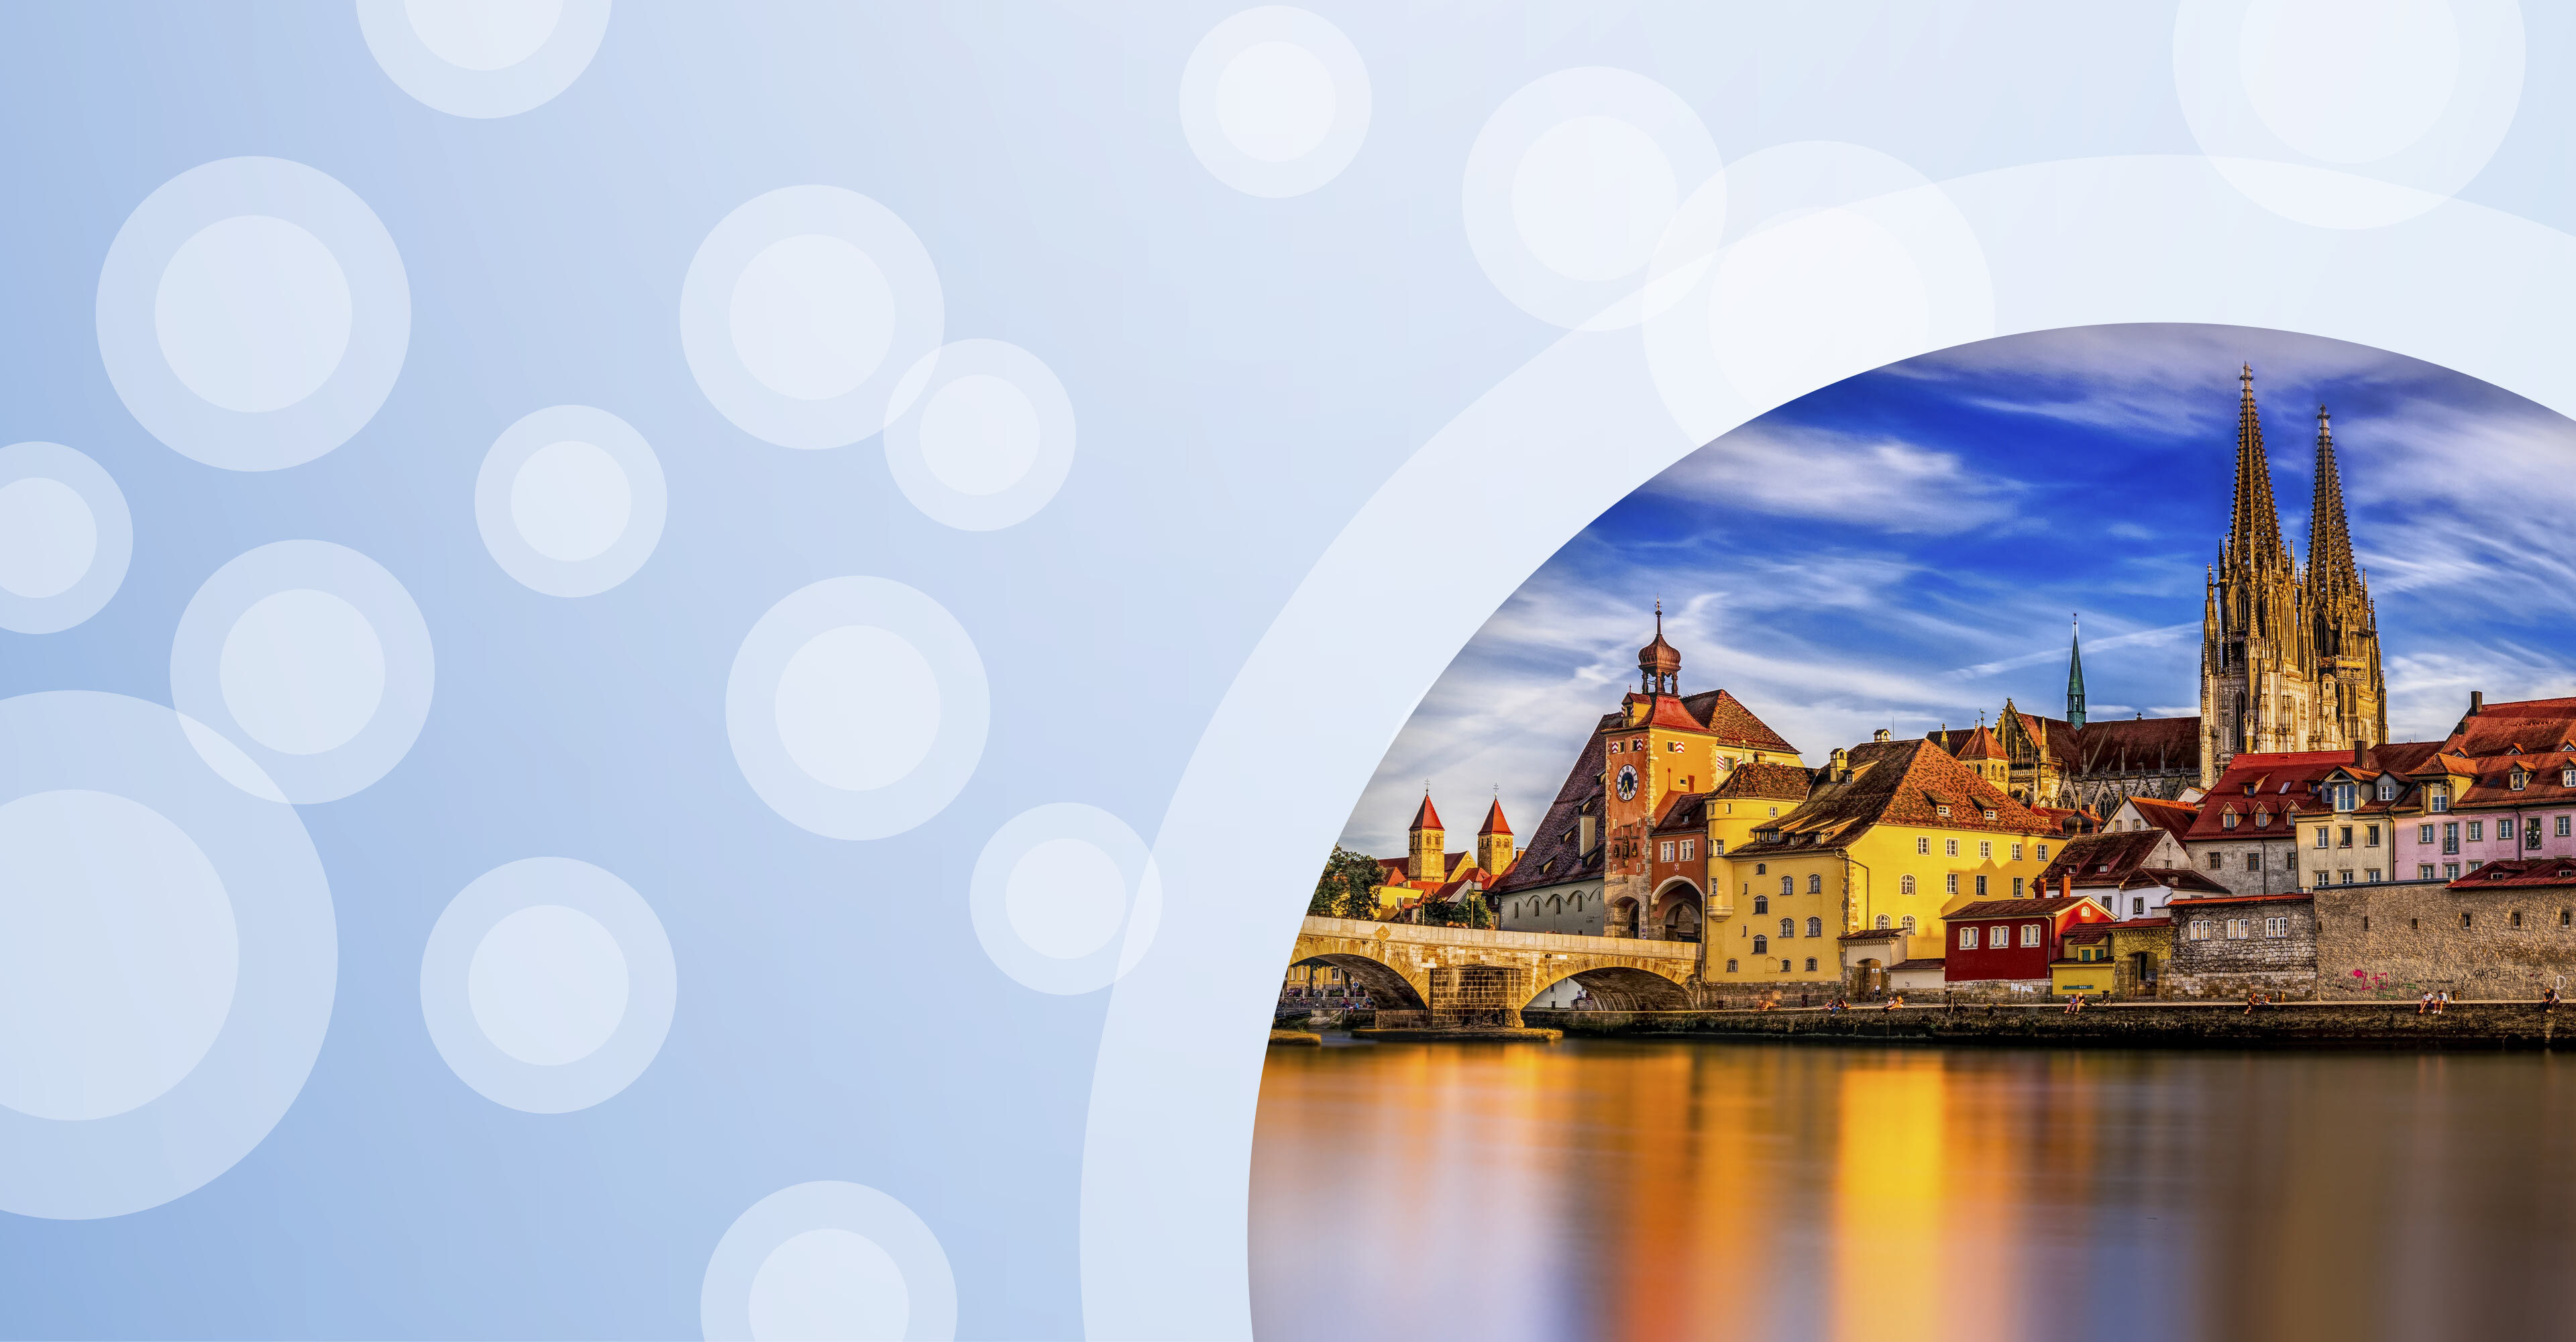 Regionalgrafik in hellblau mit halbtransparenten weißen Kreisen und Foto von Regensburg an der Donau